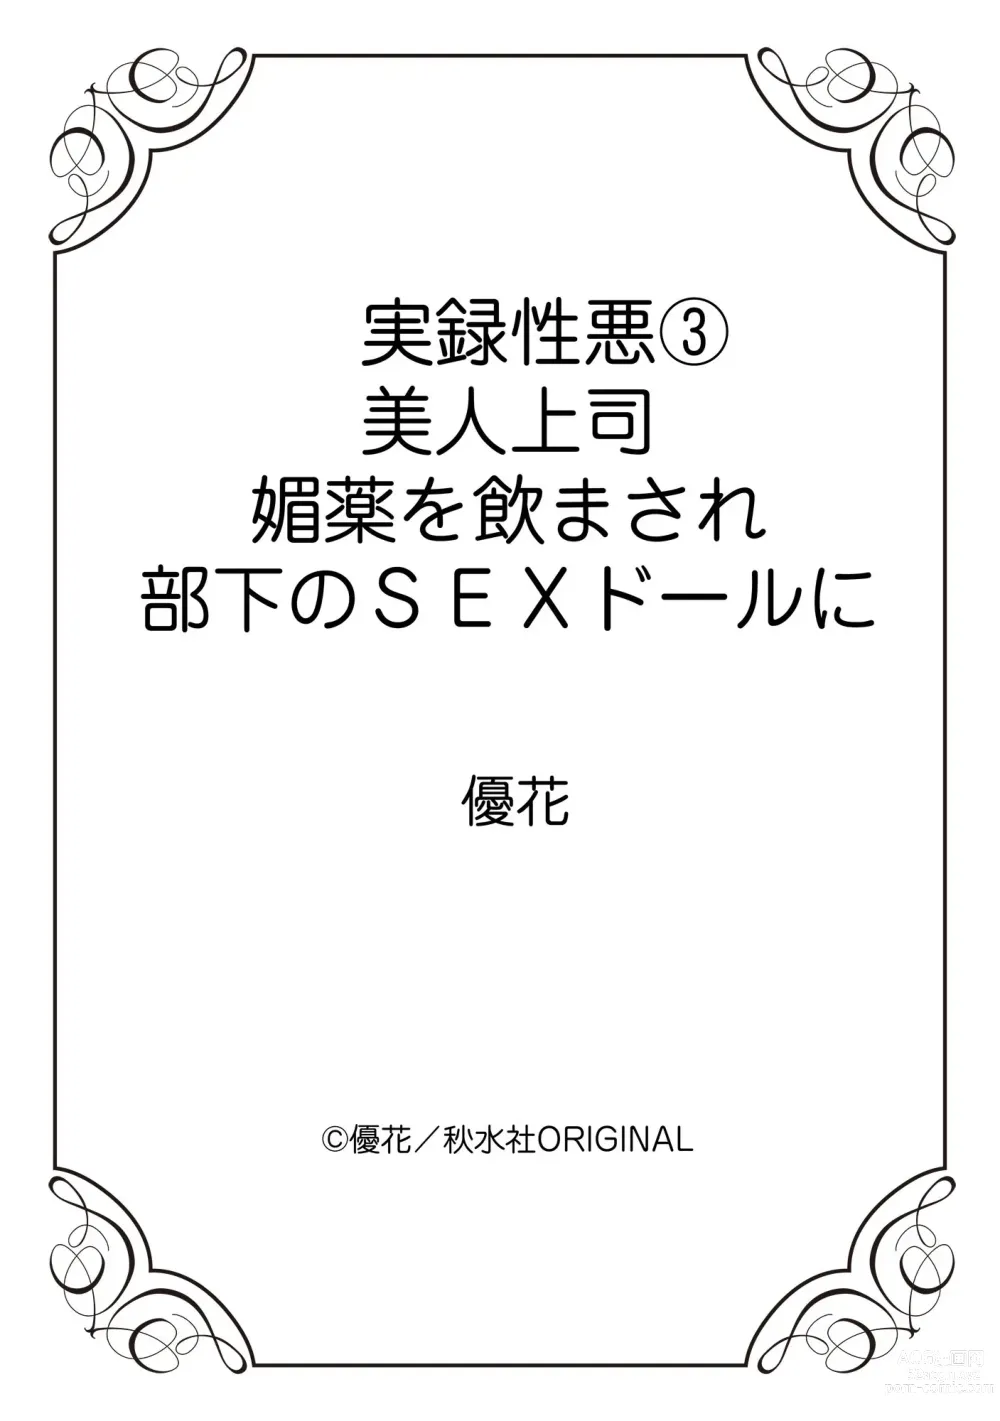 Page 65 of manga Jitsuroku Shouwaru 3 Bijin Joushi Biyaku o Nomasare Buka no SEX Doll ni